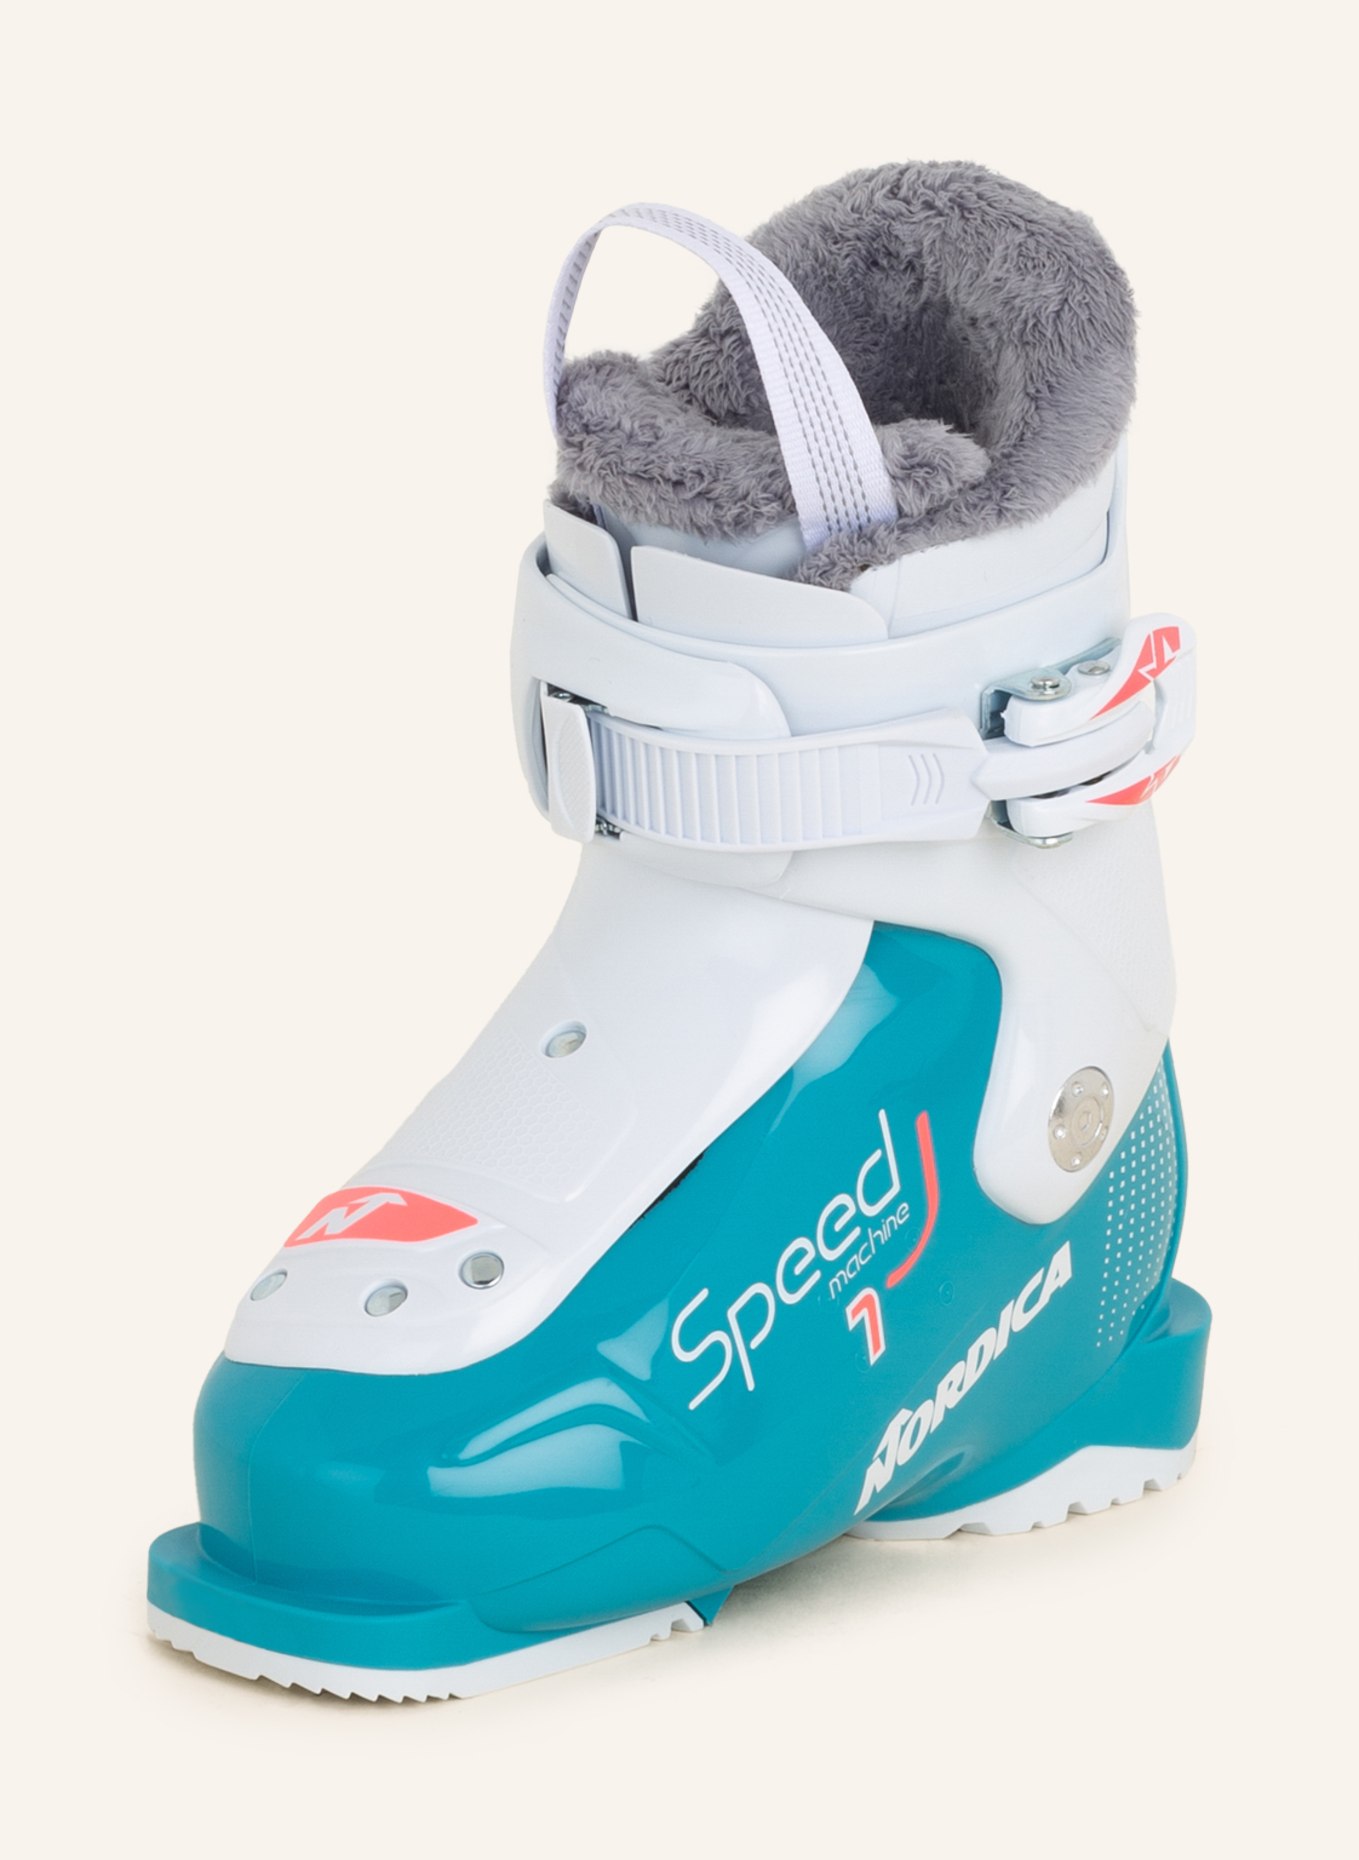 NORDICA Skischuhe SPEEDMACHINE J1 , Farbe: TÜRKIS/ WEISS/ ROSA (Bild 1)